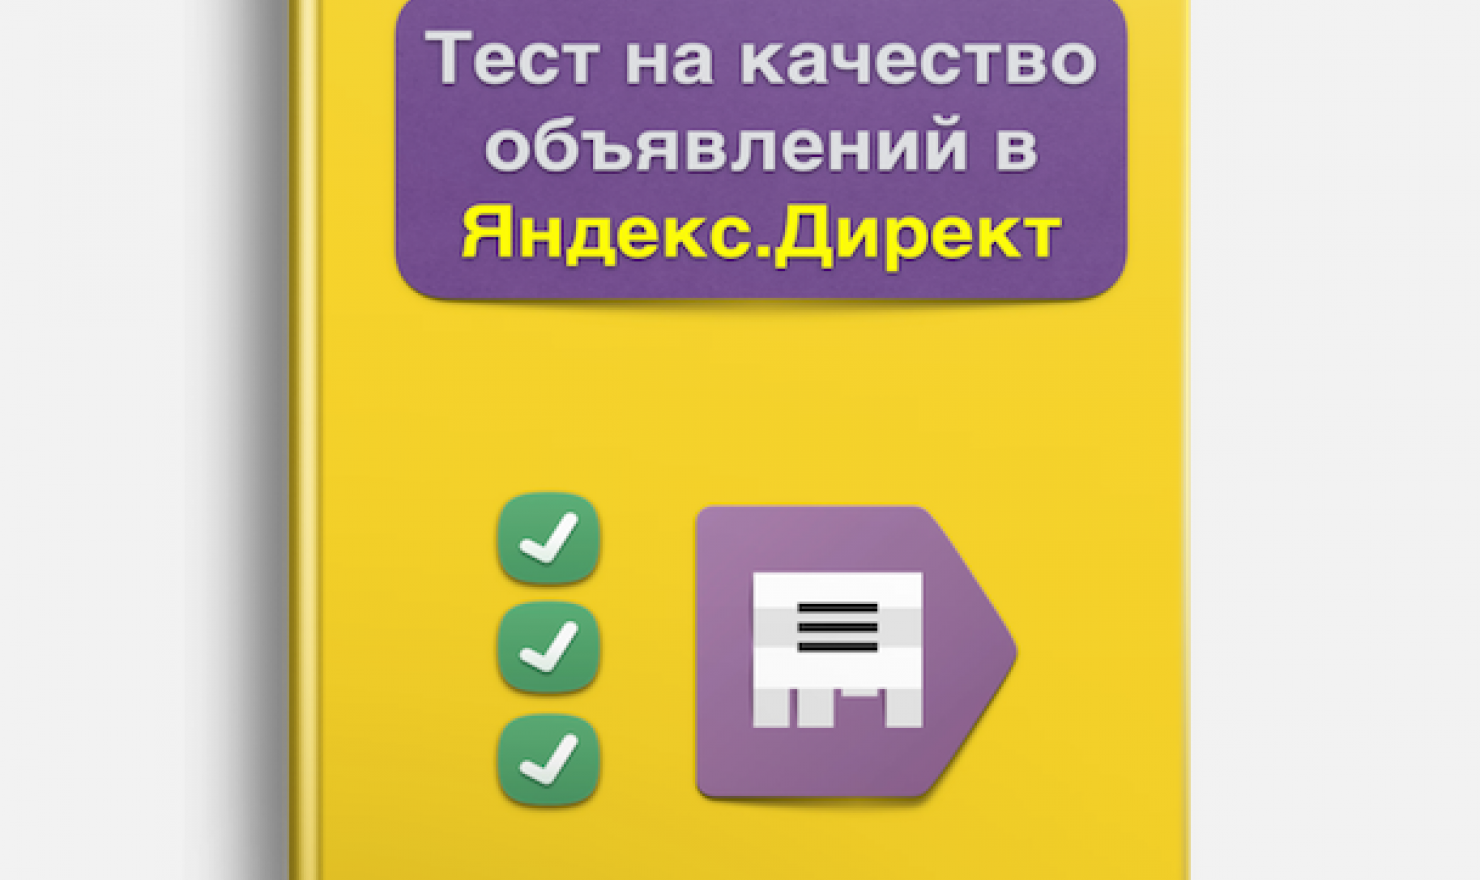 PDF-файл "Тест на качество объявлений в Яндекс.Директ"/